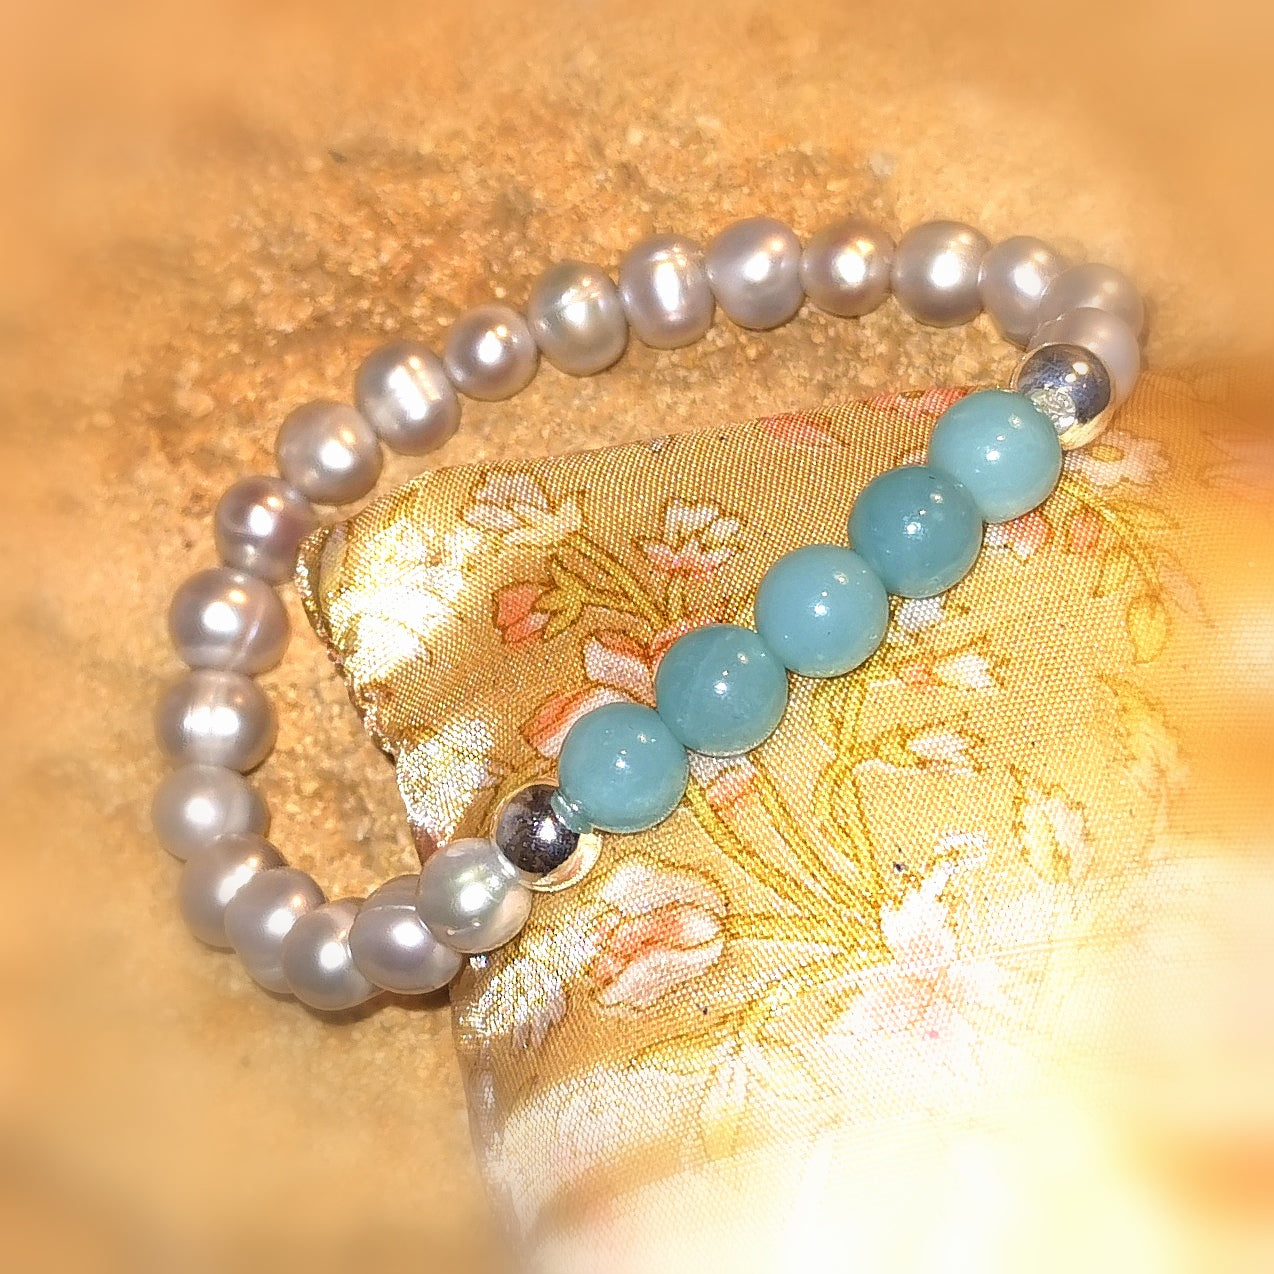 Amazonit Edelstein Heilstein mit Perle, silberfarben, Karma Armband geweiht, Licht und Liebe